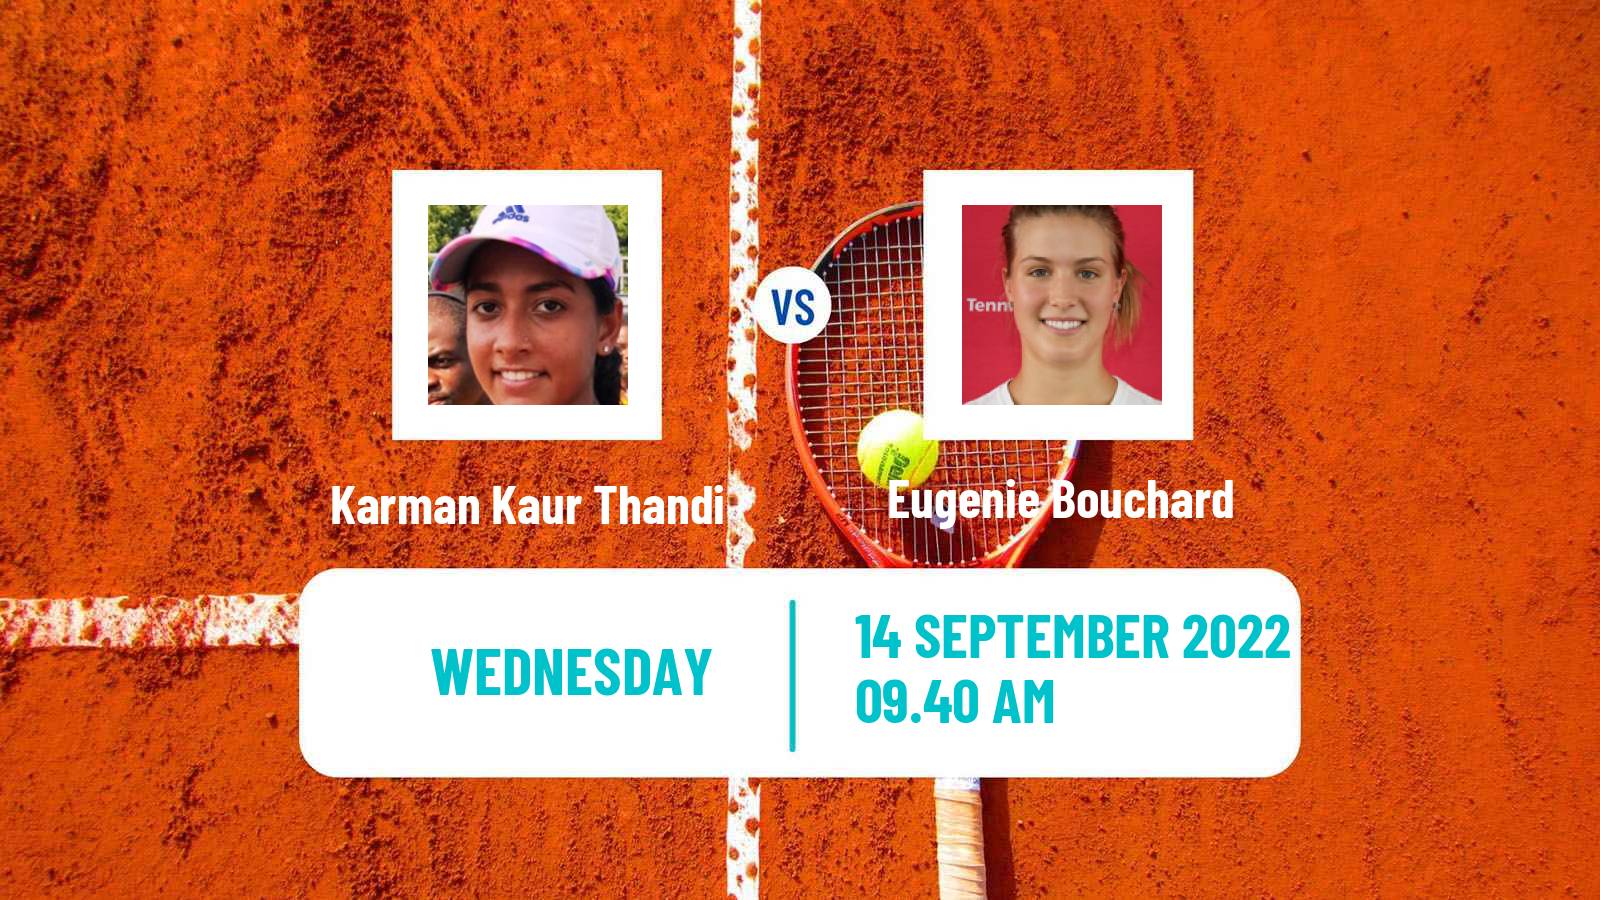 Tennis WTA Chennai Karman Kaur Thandi - Eugenie Bouchard